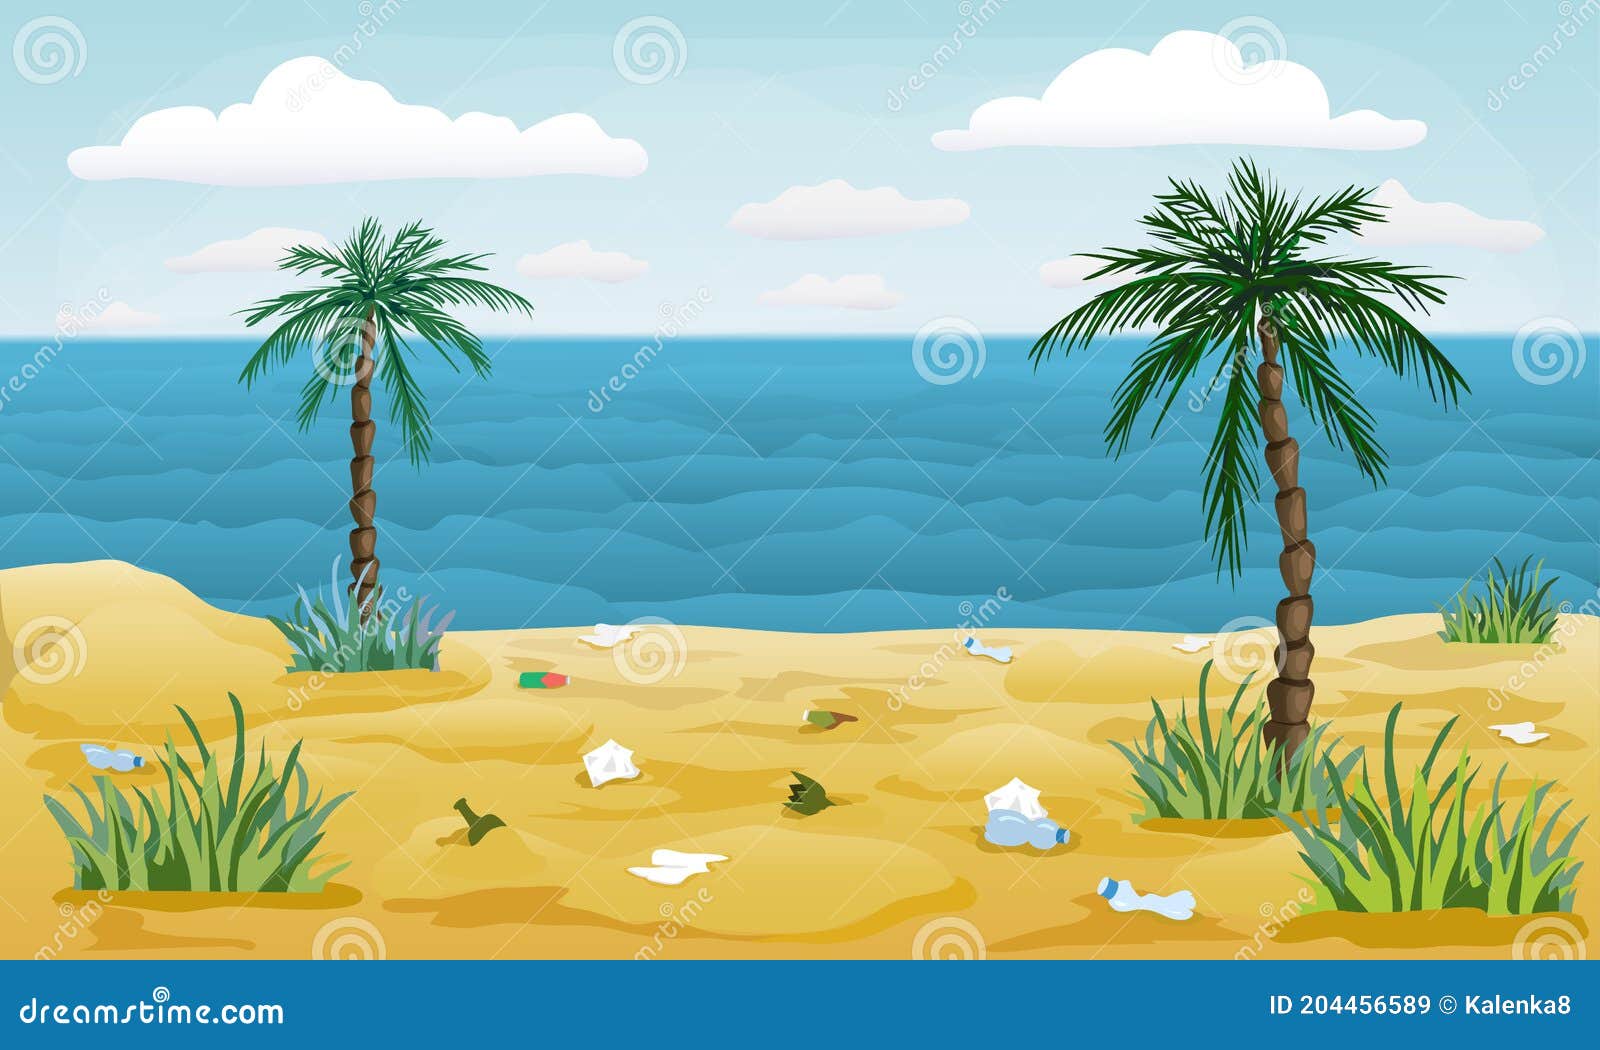 Playa Contaminada Con Basura Alrededor. Arenoso Mar Tropical Orilla Con  Palmas Y Basura. Dibujo Animado Ilustración De La Contamin Stock de  ilustración - Ilustración de limpieza, orilla: 204456589